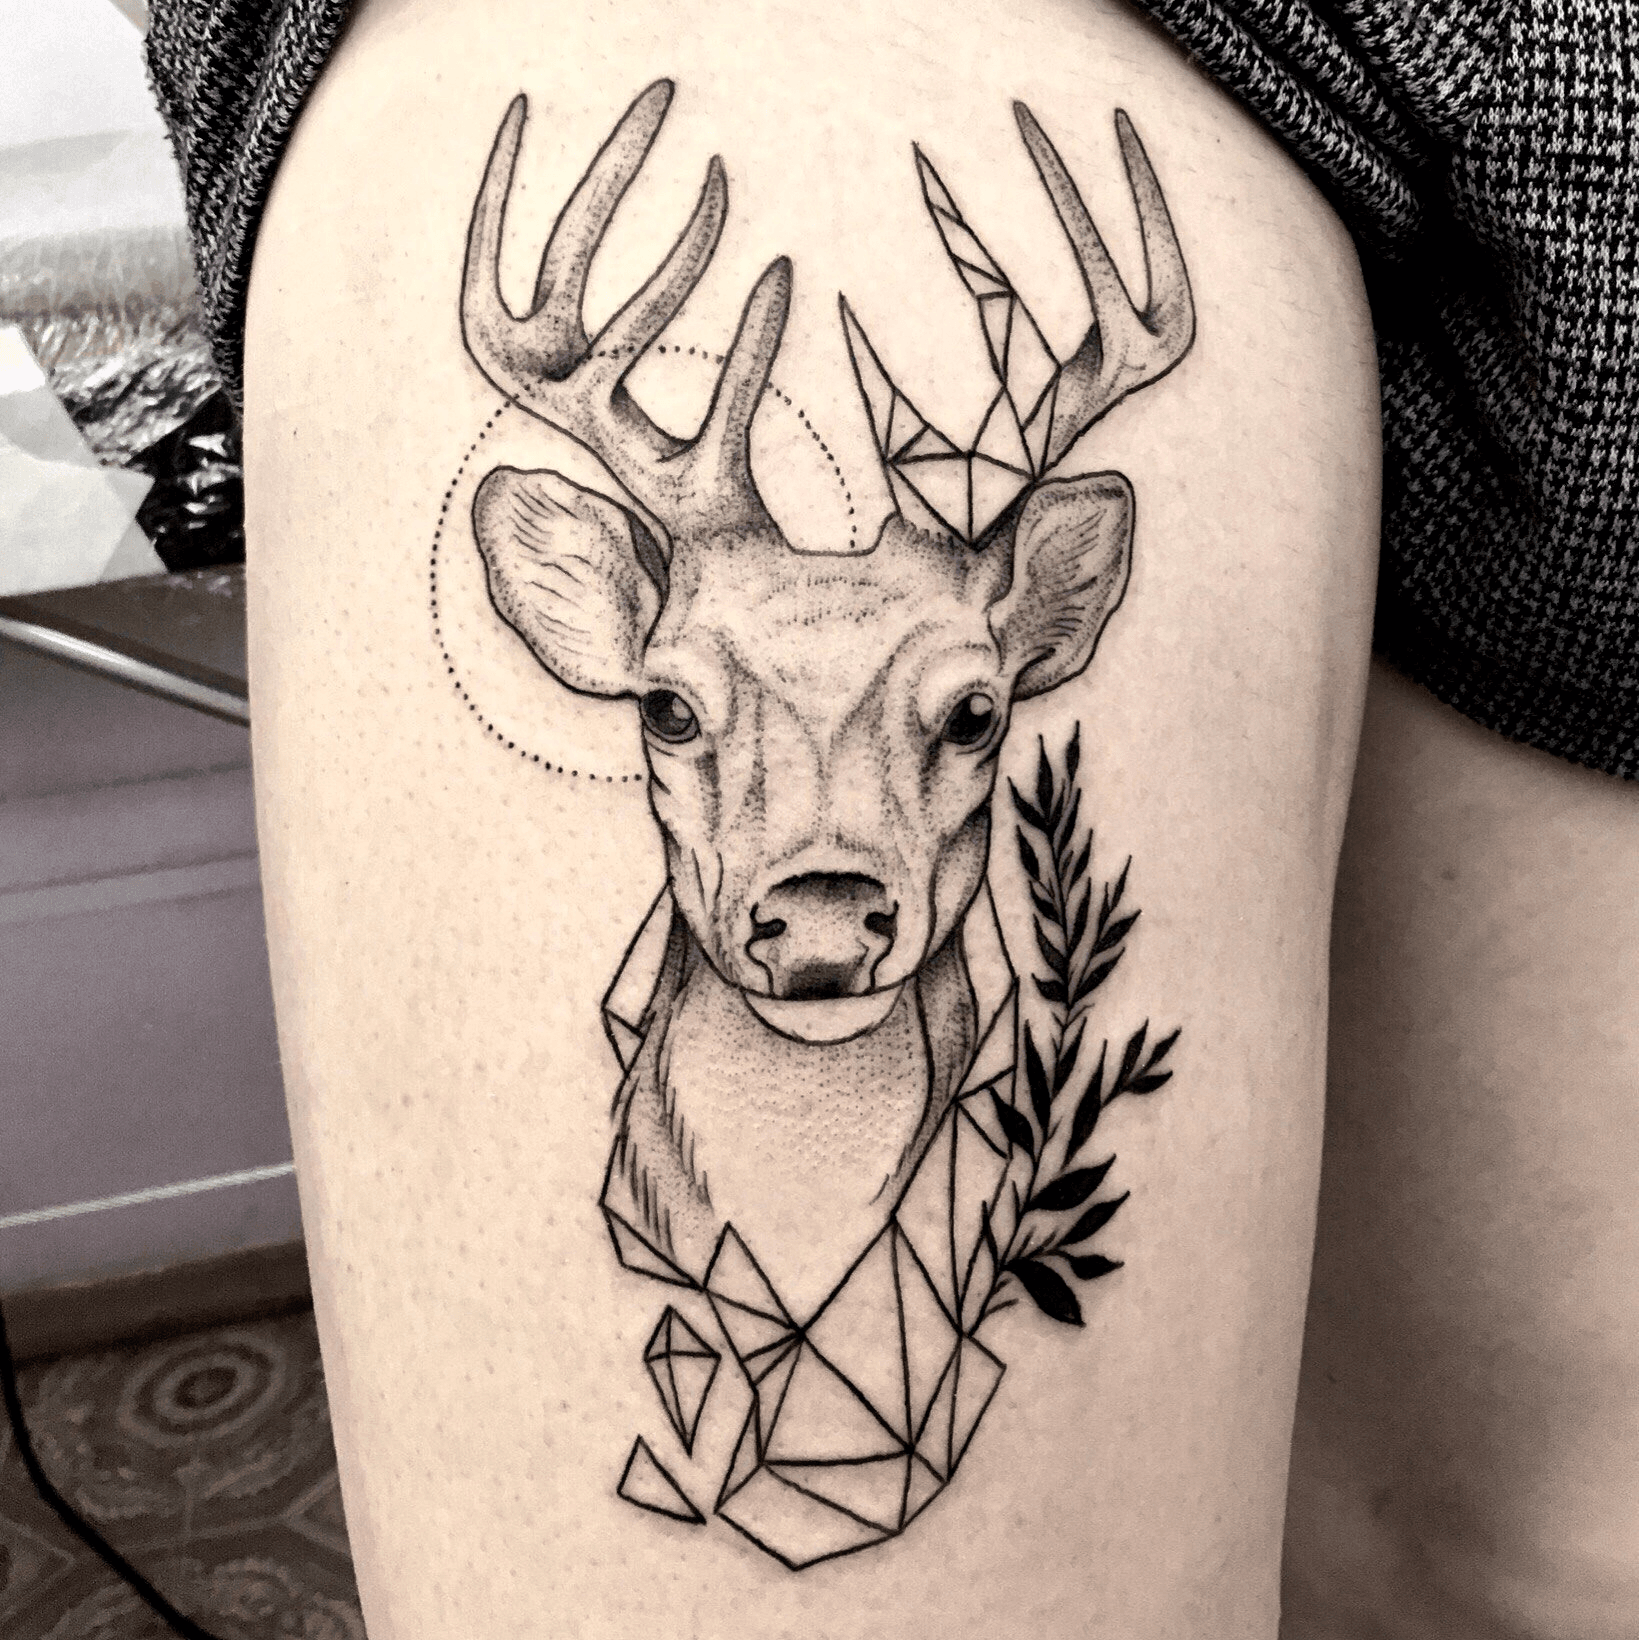 Explore the 9 Best Deer Tattoo Ideas April 2018  Tattoodo